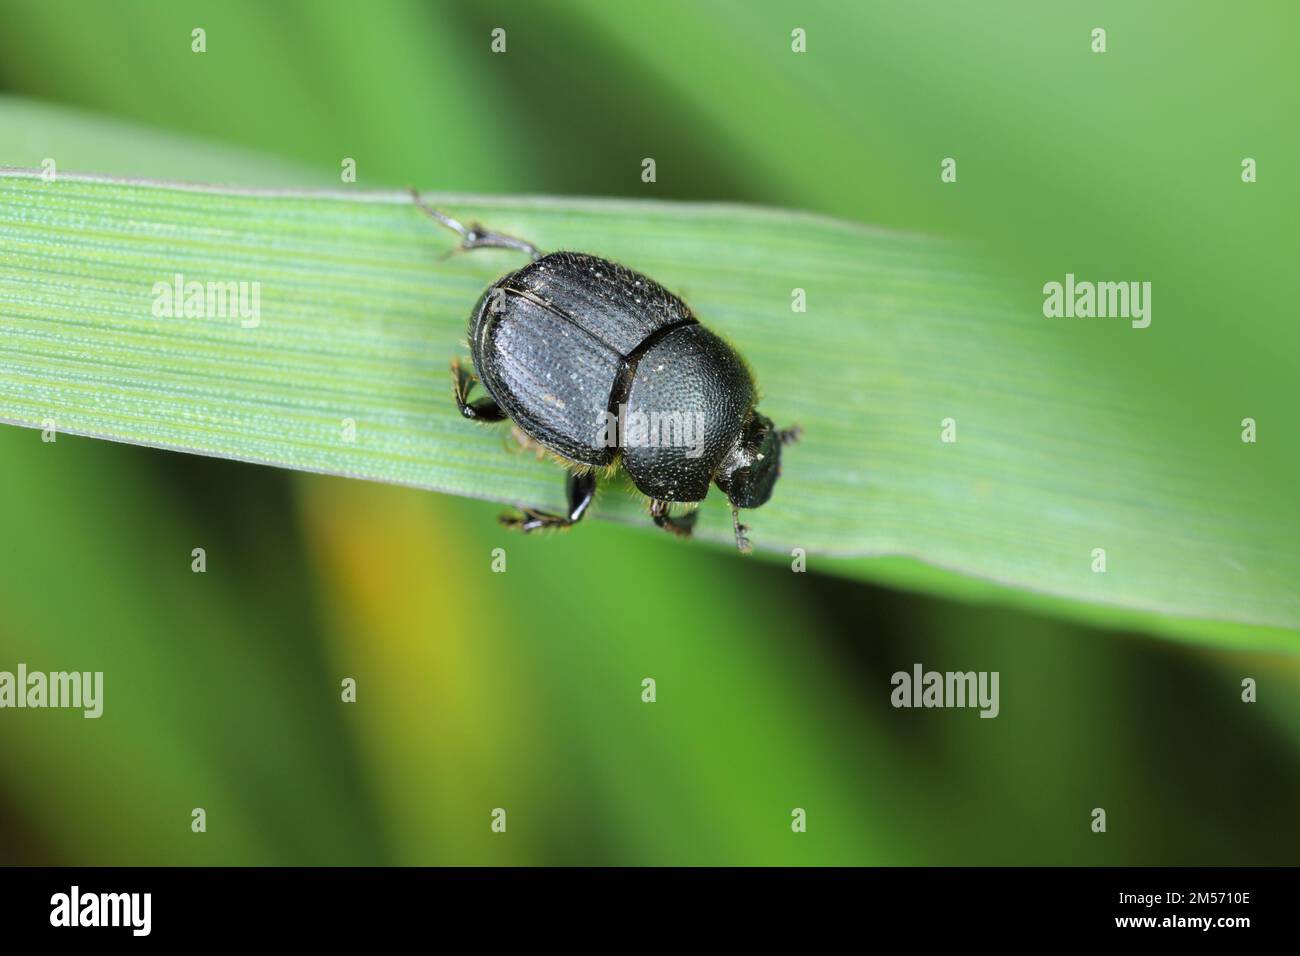 Onthophagus - dung scarabée. Petit dendroctone de la famille des Scarabaeidae. Ces insectes se nourrissent d'excréments d'animaux. Banque D'Images